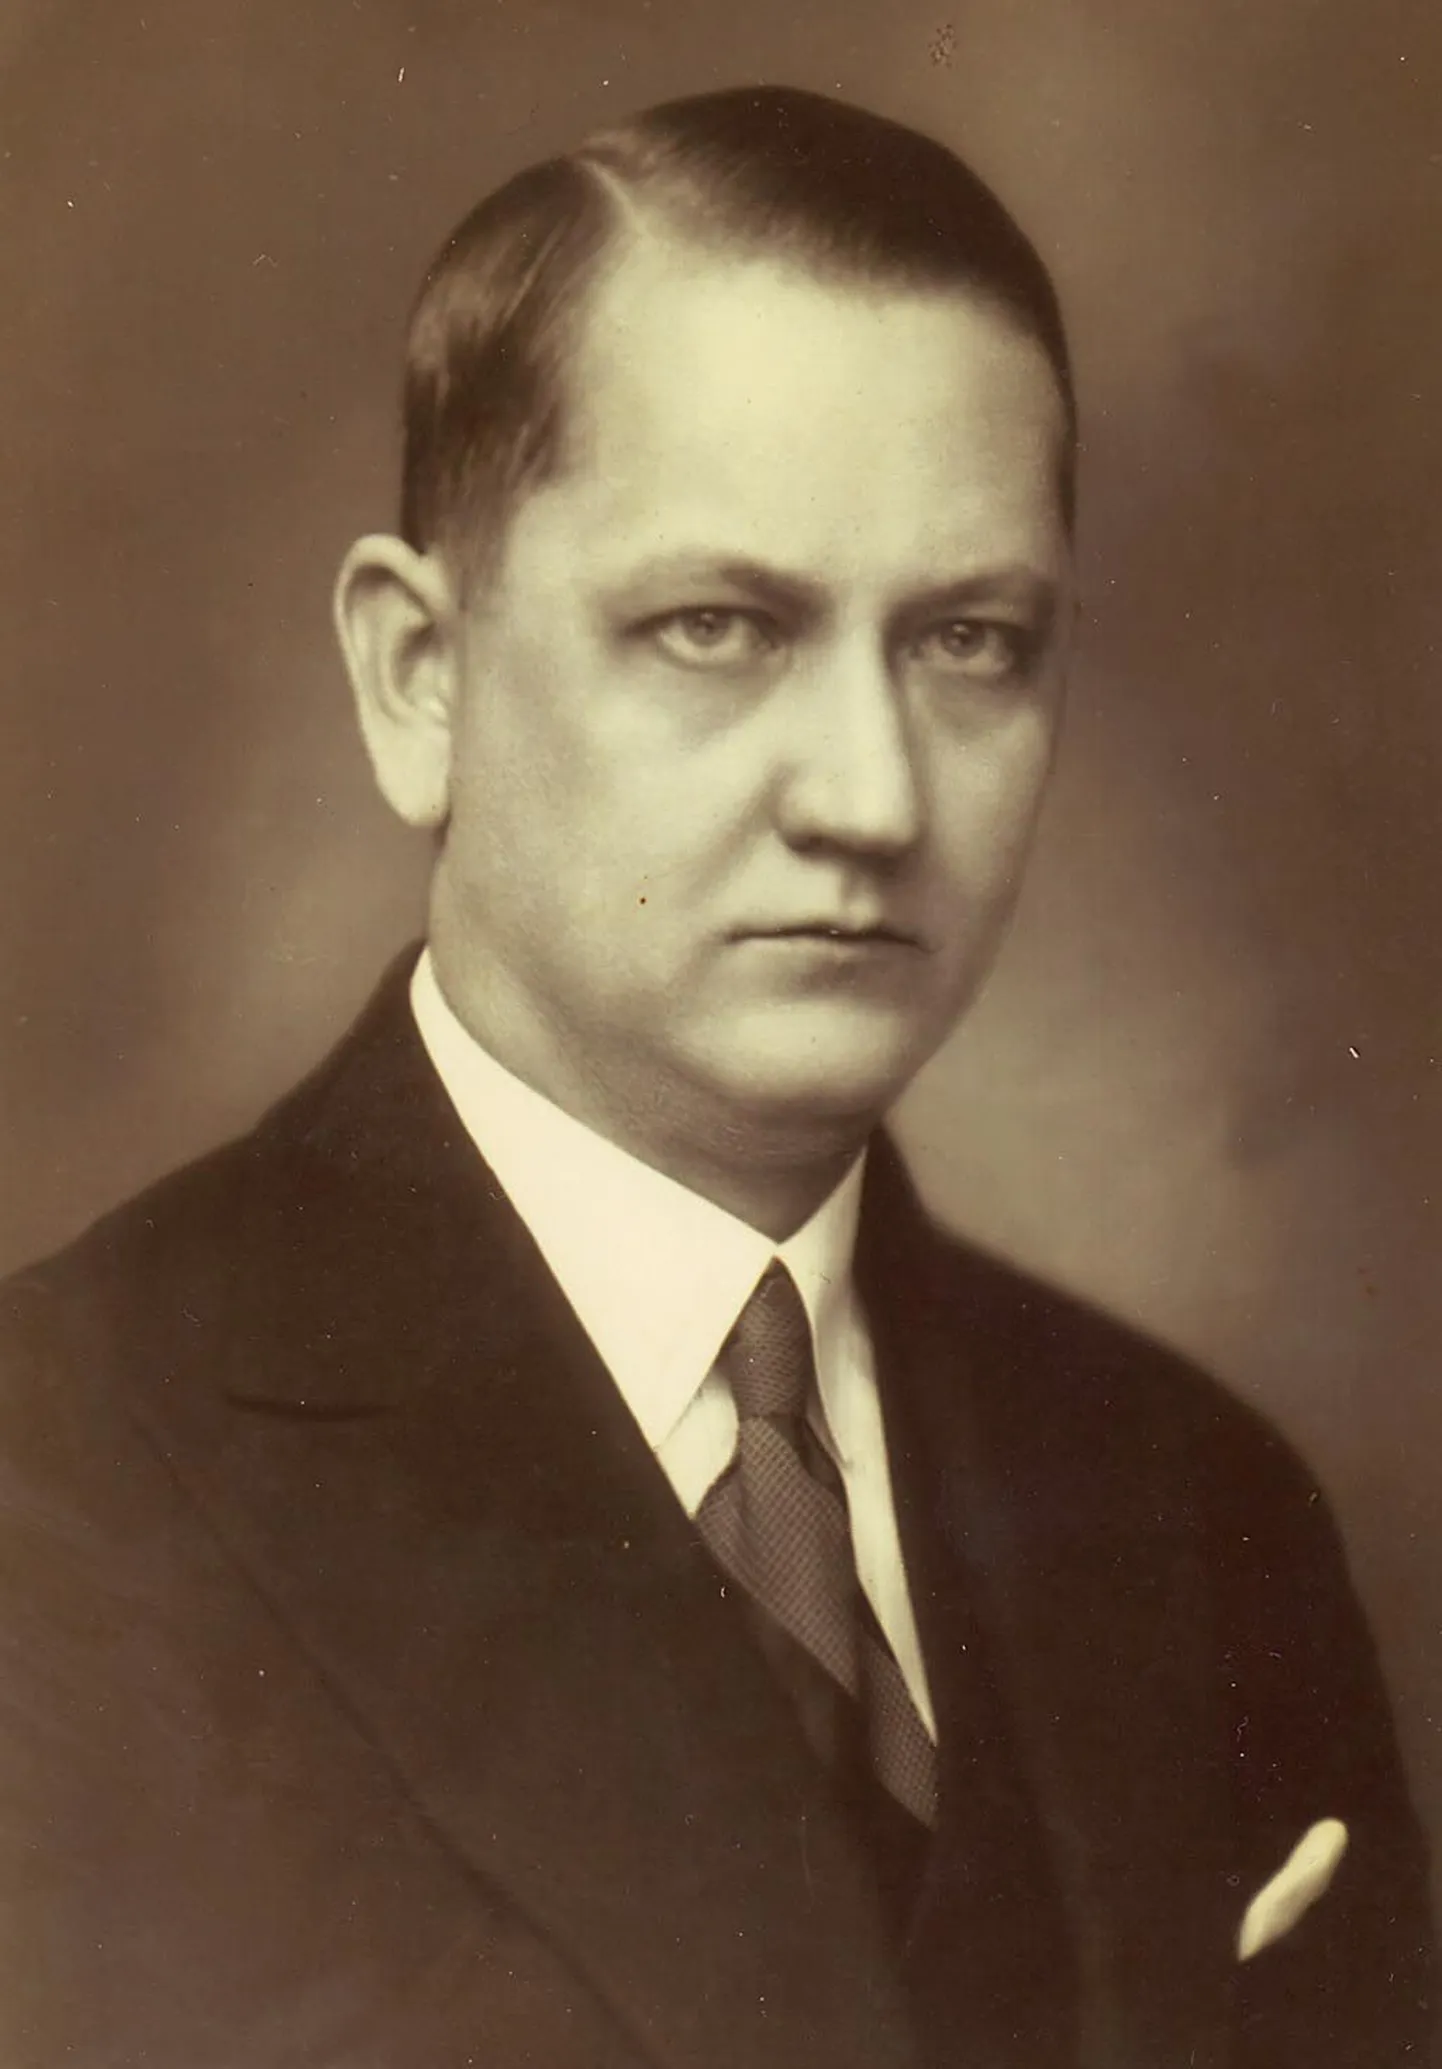 Juuraharidusega põline pärnakas Oskar Kask (1898-1942) oli Pärnu linnapea aastail 1924-1936.